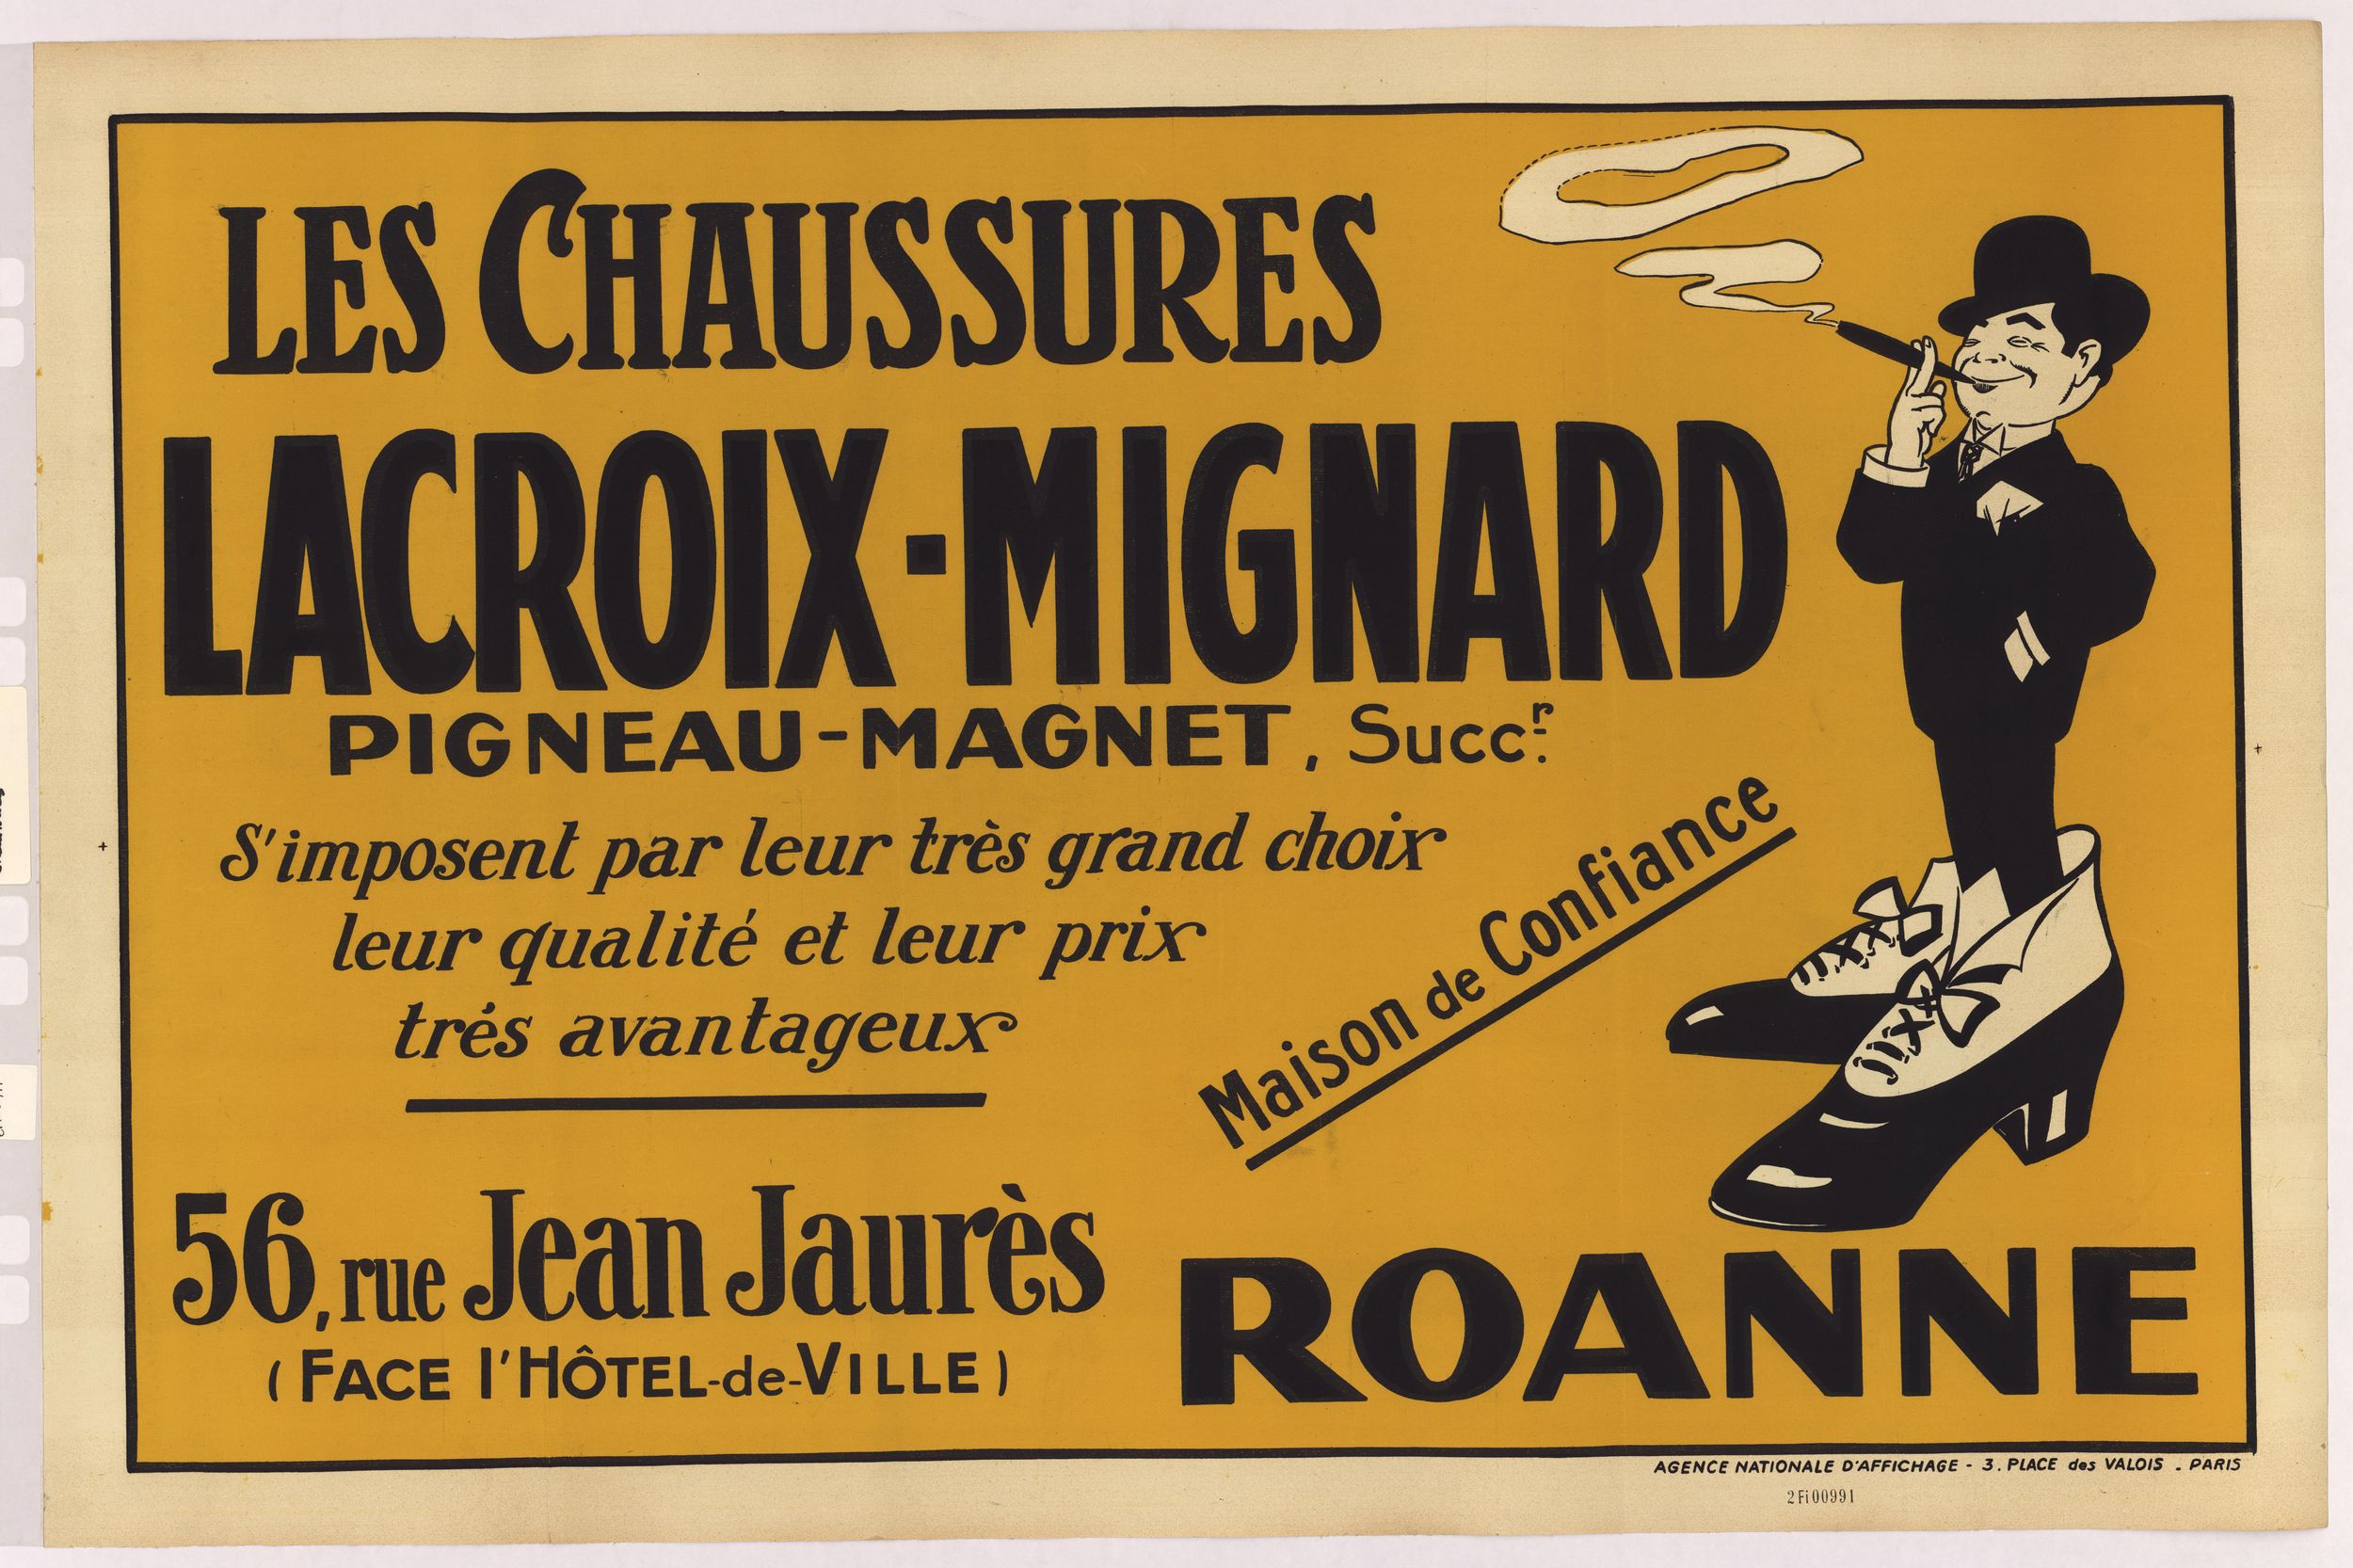 Chaussures Lacroix-Mignard, Roanne : affiche publicitaire couleur (1900, cote : 2FI/991)